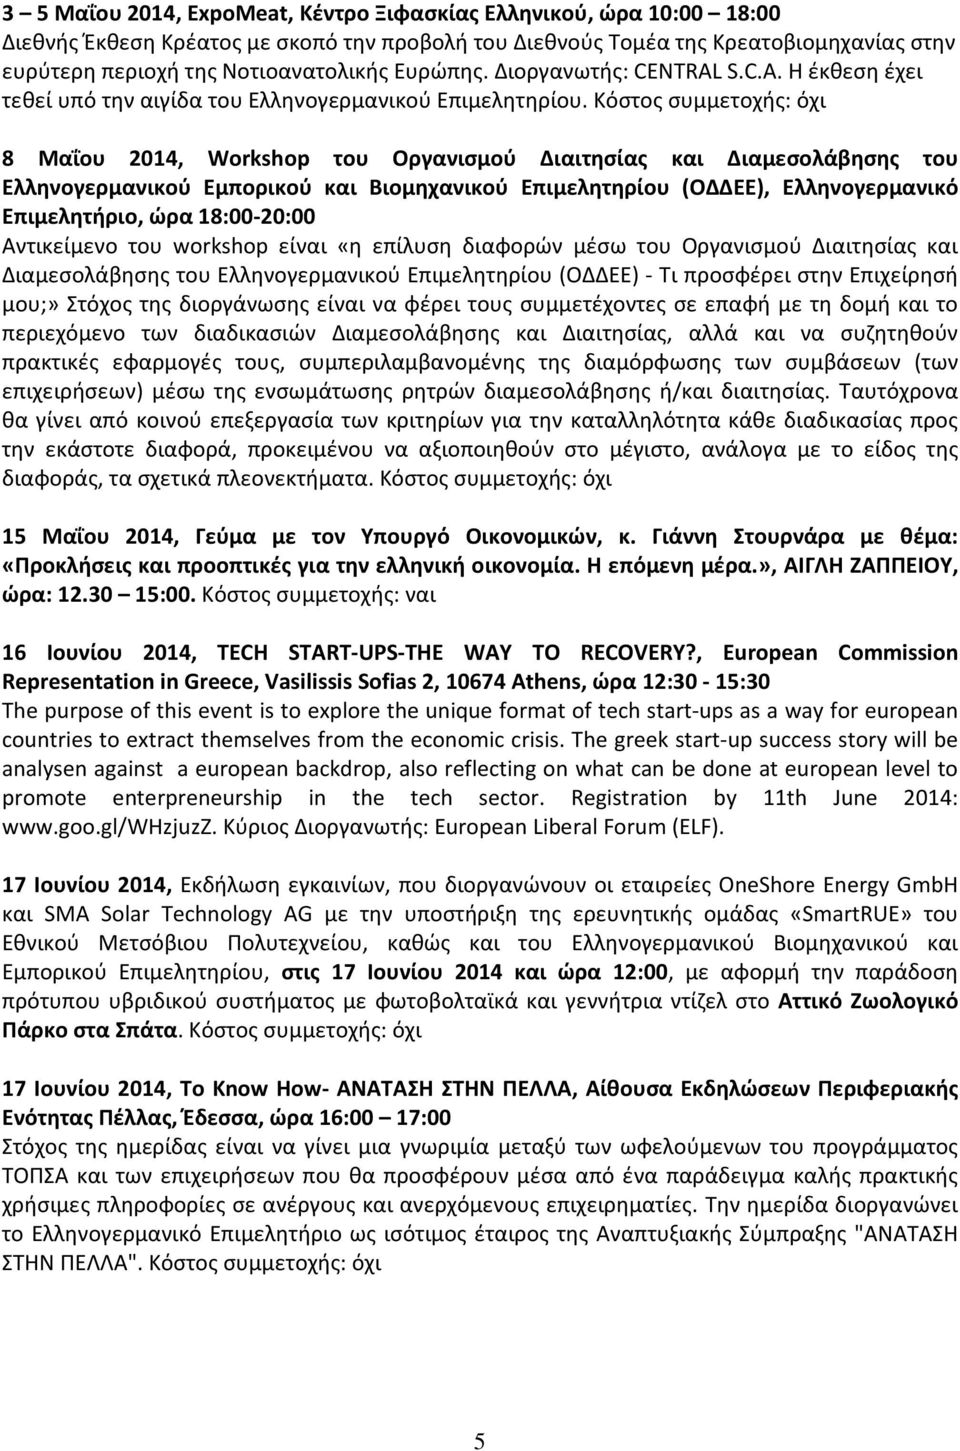 Κόστος συμμετοχής: όχι 8 Μαΐου 2014, Workshop του Οργανισμού Διαιτησίας και Διαμεσολάβησης του Ελληνογερμανικού Εμπορικού και Βιομηχανικού Επιμελητηρίου (ΟΔΔΕΕ), Ελληνογερμανικό Επιμελητήριο, ώρα